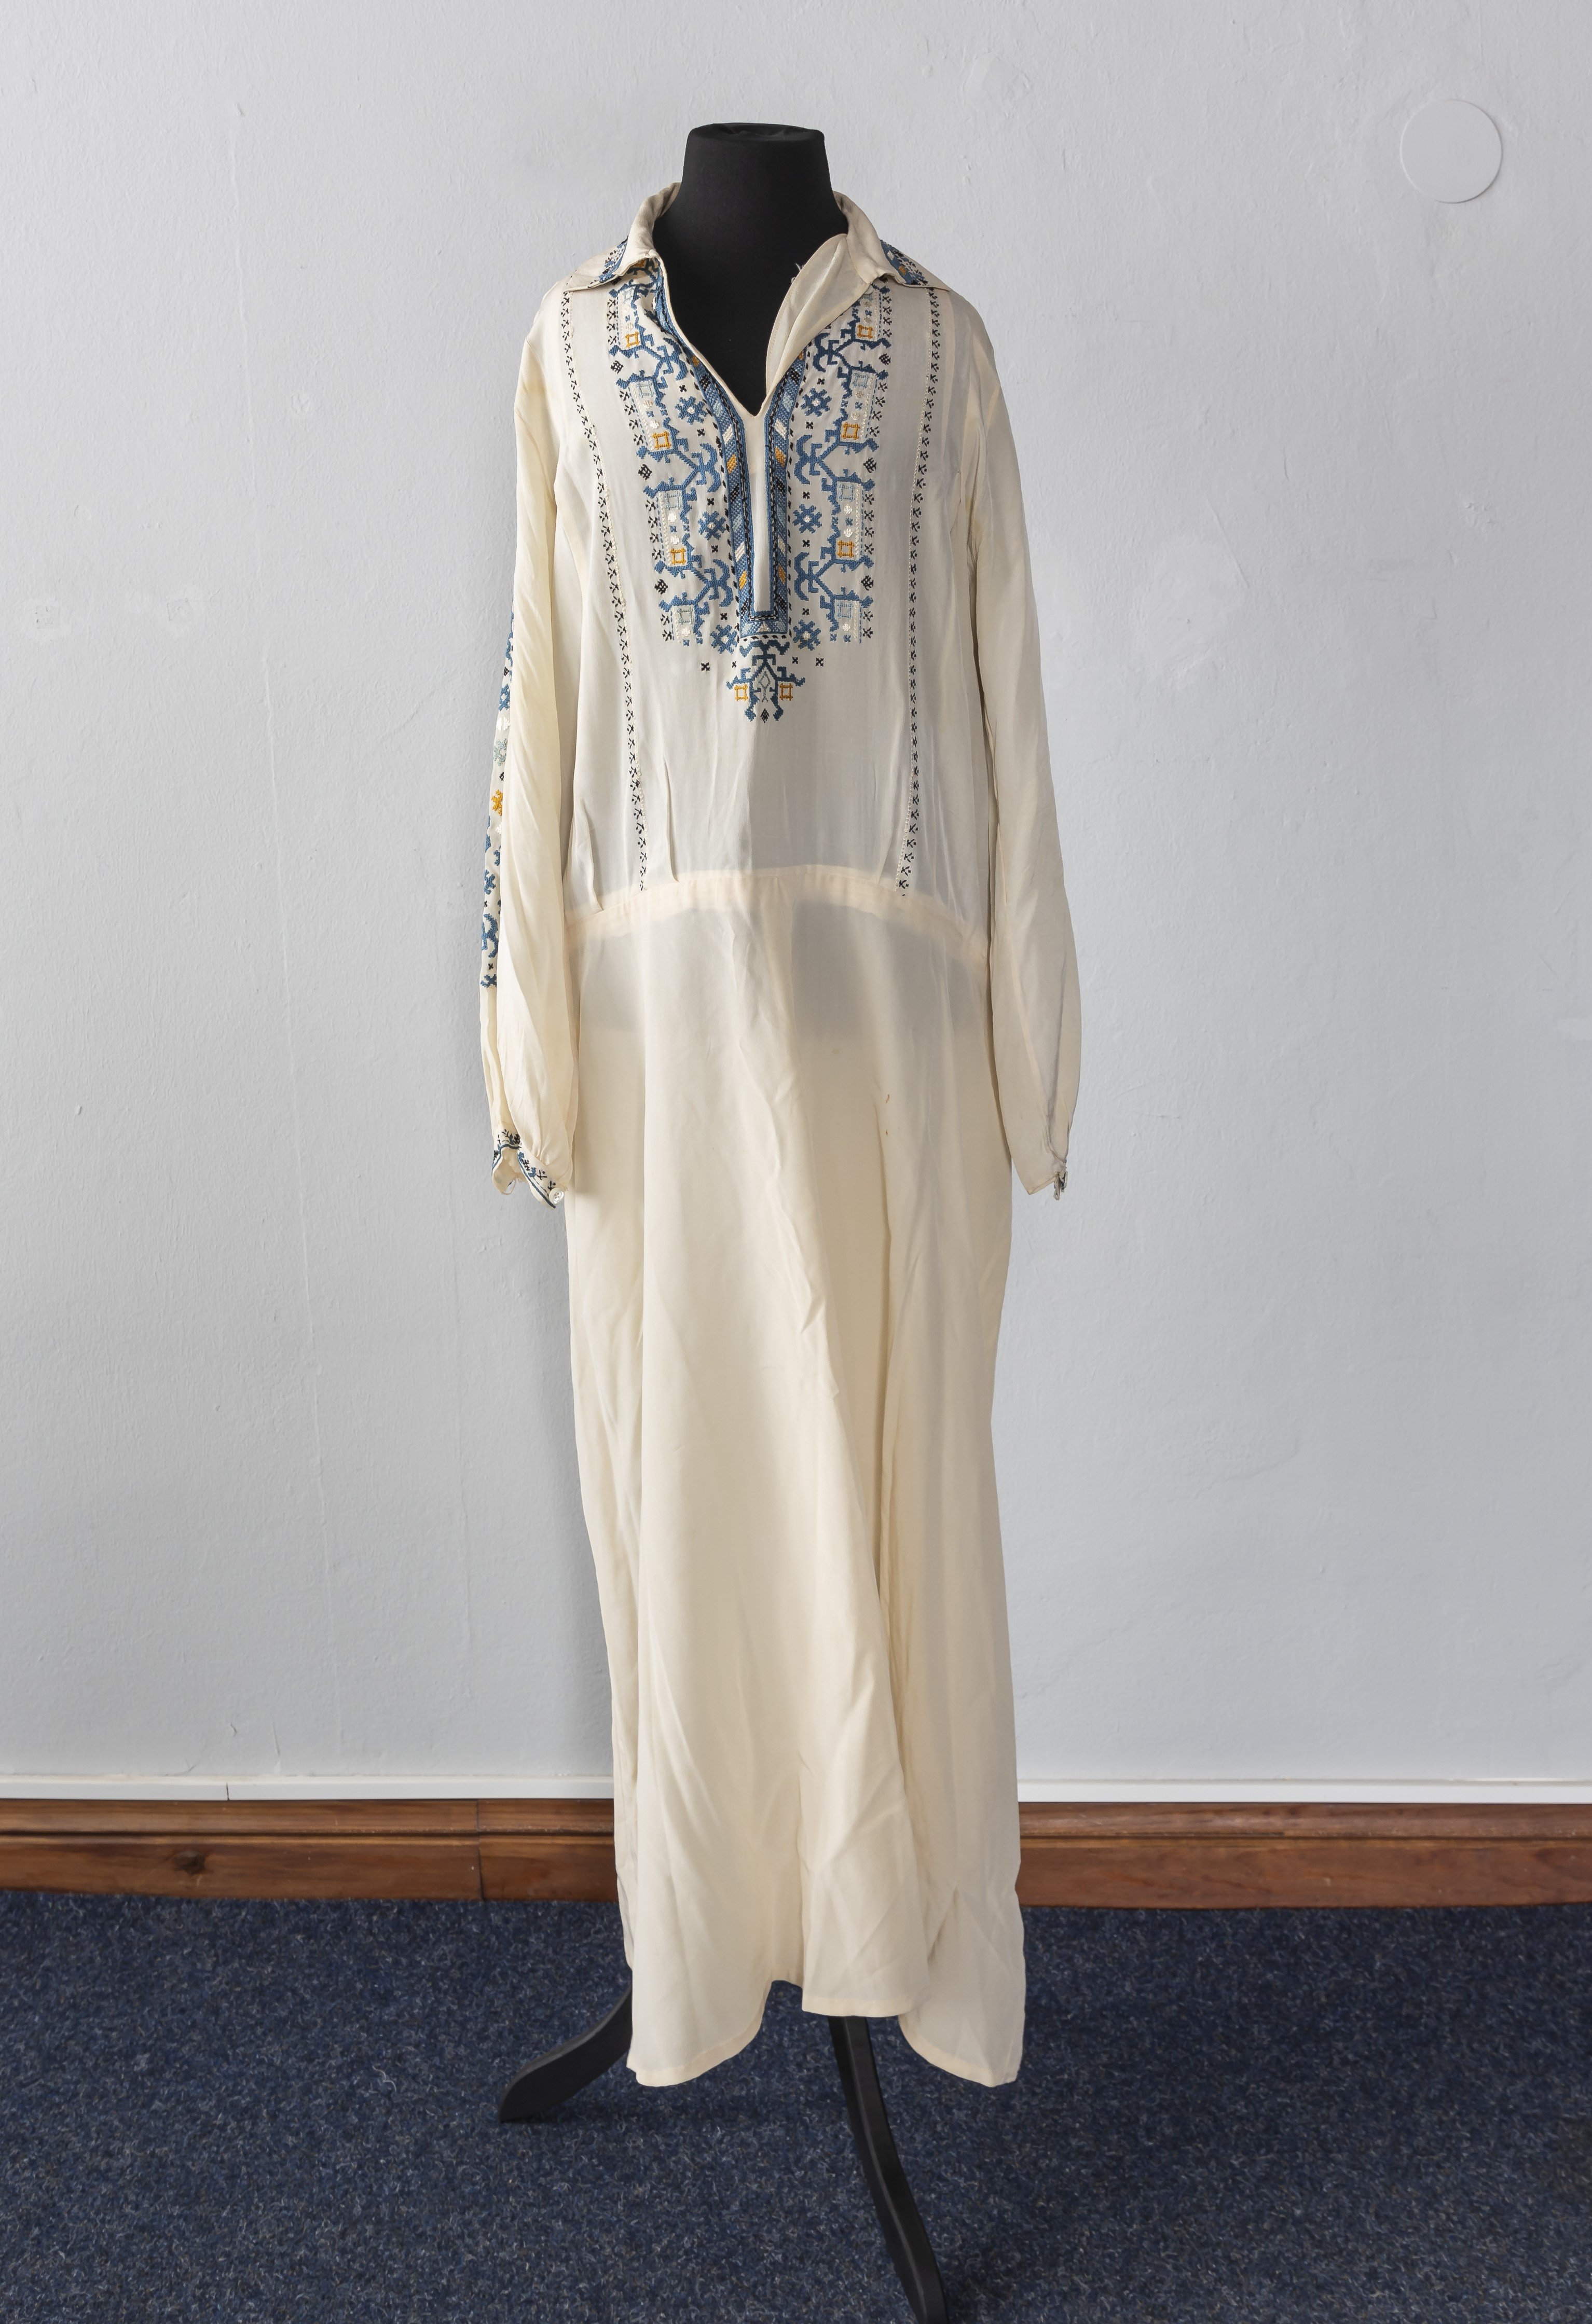 Damenkleid (Brautkleid?) aus cremefarbener Seide mit Stickereien, 1920-30er Jahre (?) (Schloß Wernigerode GmbH RR-F)